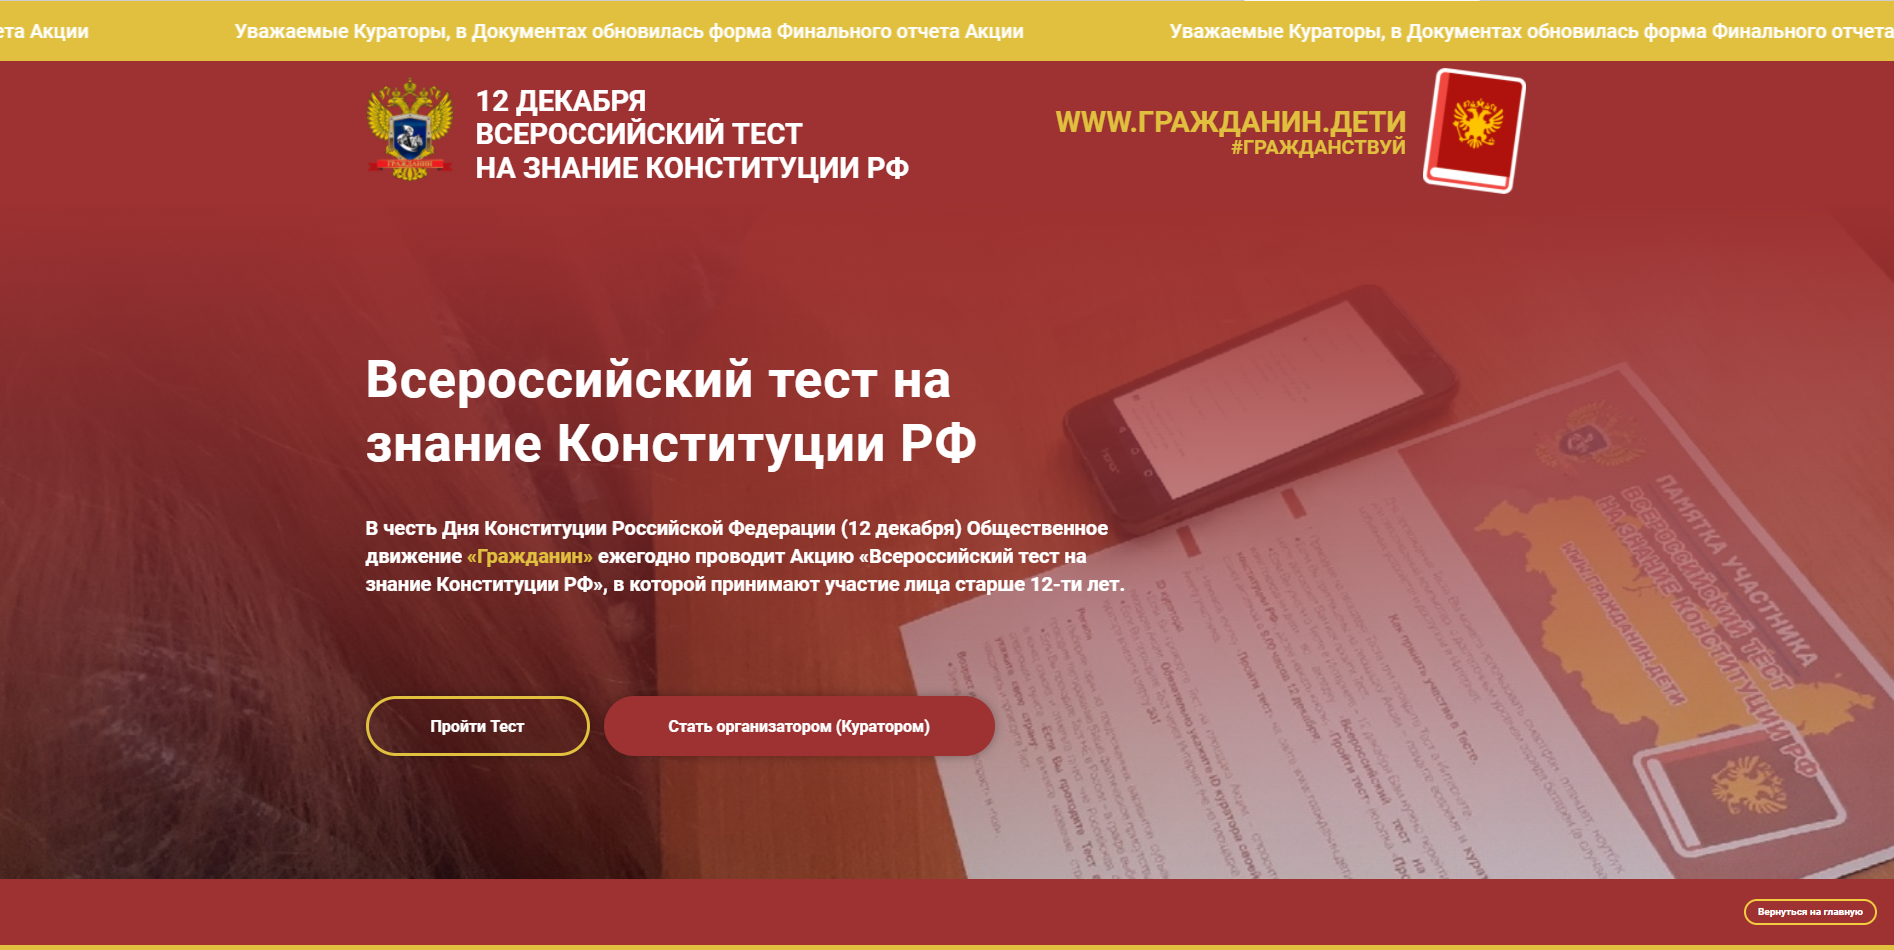 VI Всероссийский тест на знание Конституции РФ